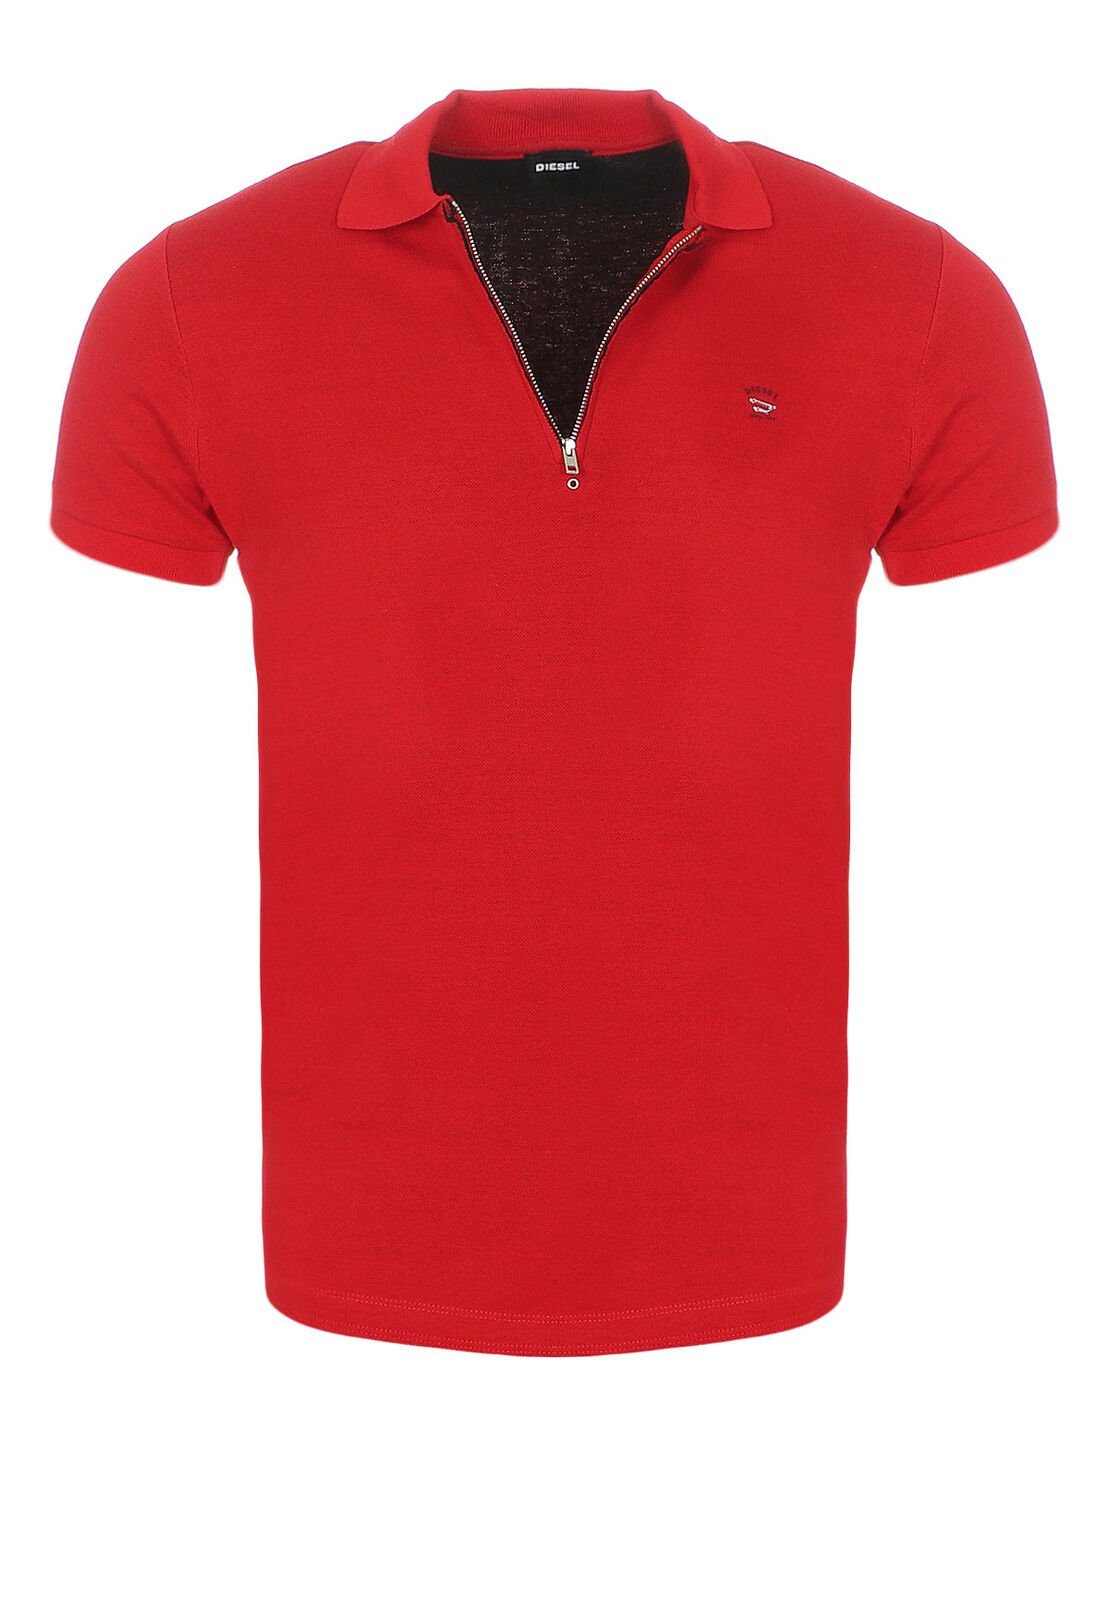 mit Diesel Herren T-EYE Rot Reißverschluss, Labelstitching Poloshirt Rundhalsausschnitt, mit Diesel im Brustbereich unifarben, Poloshirt